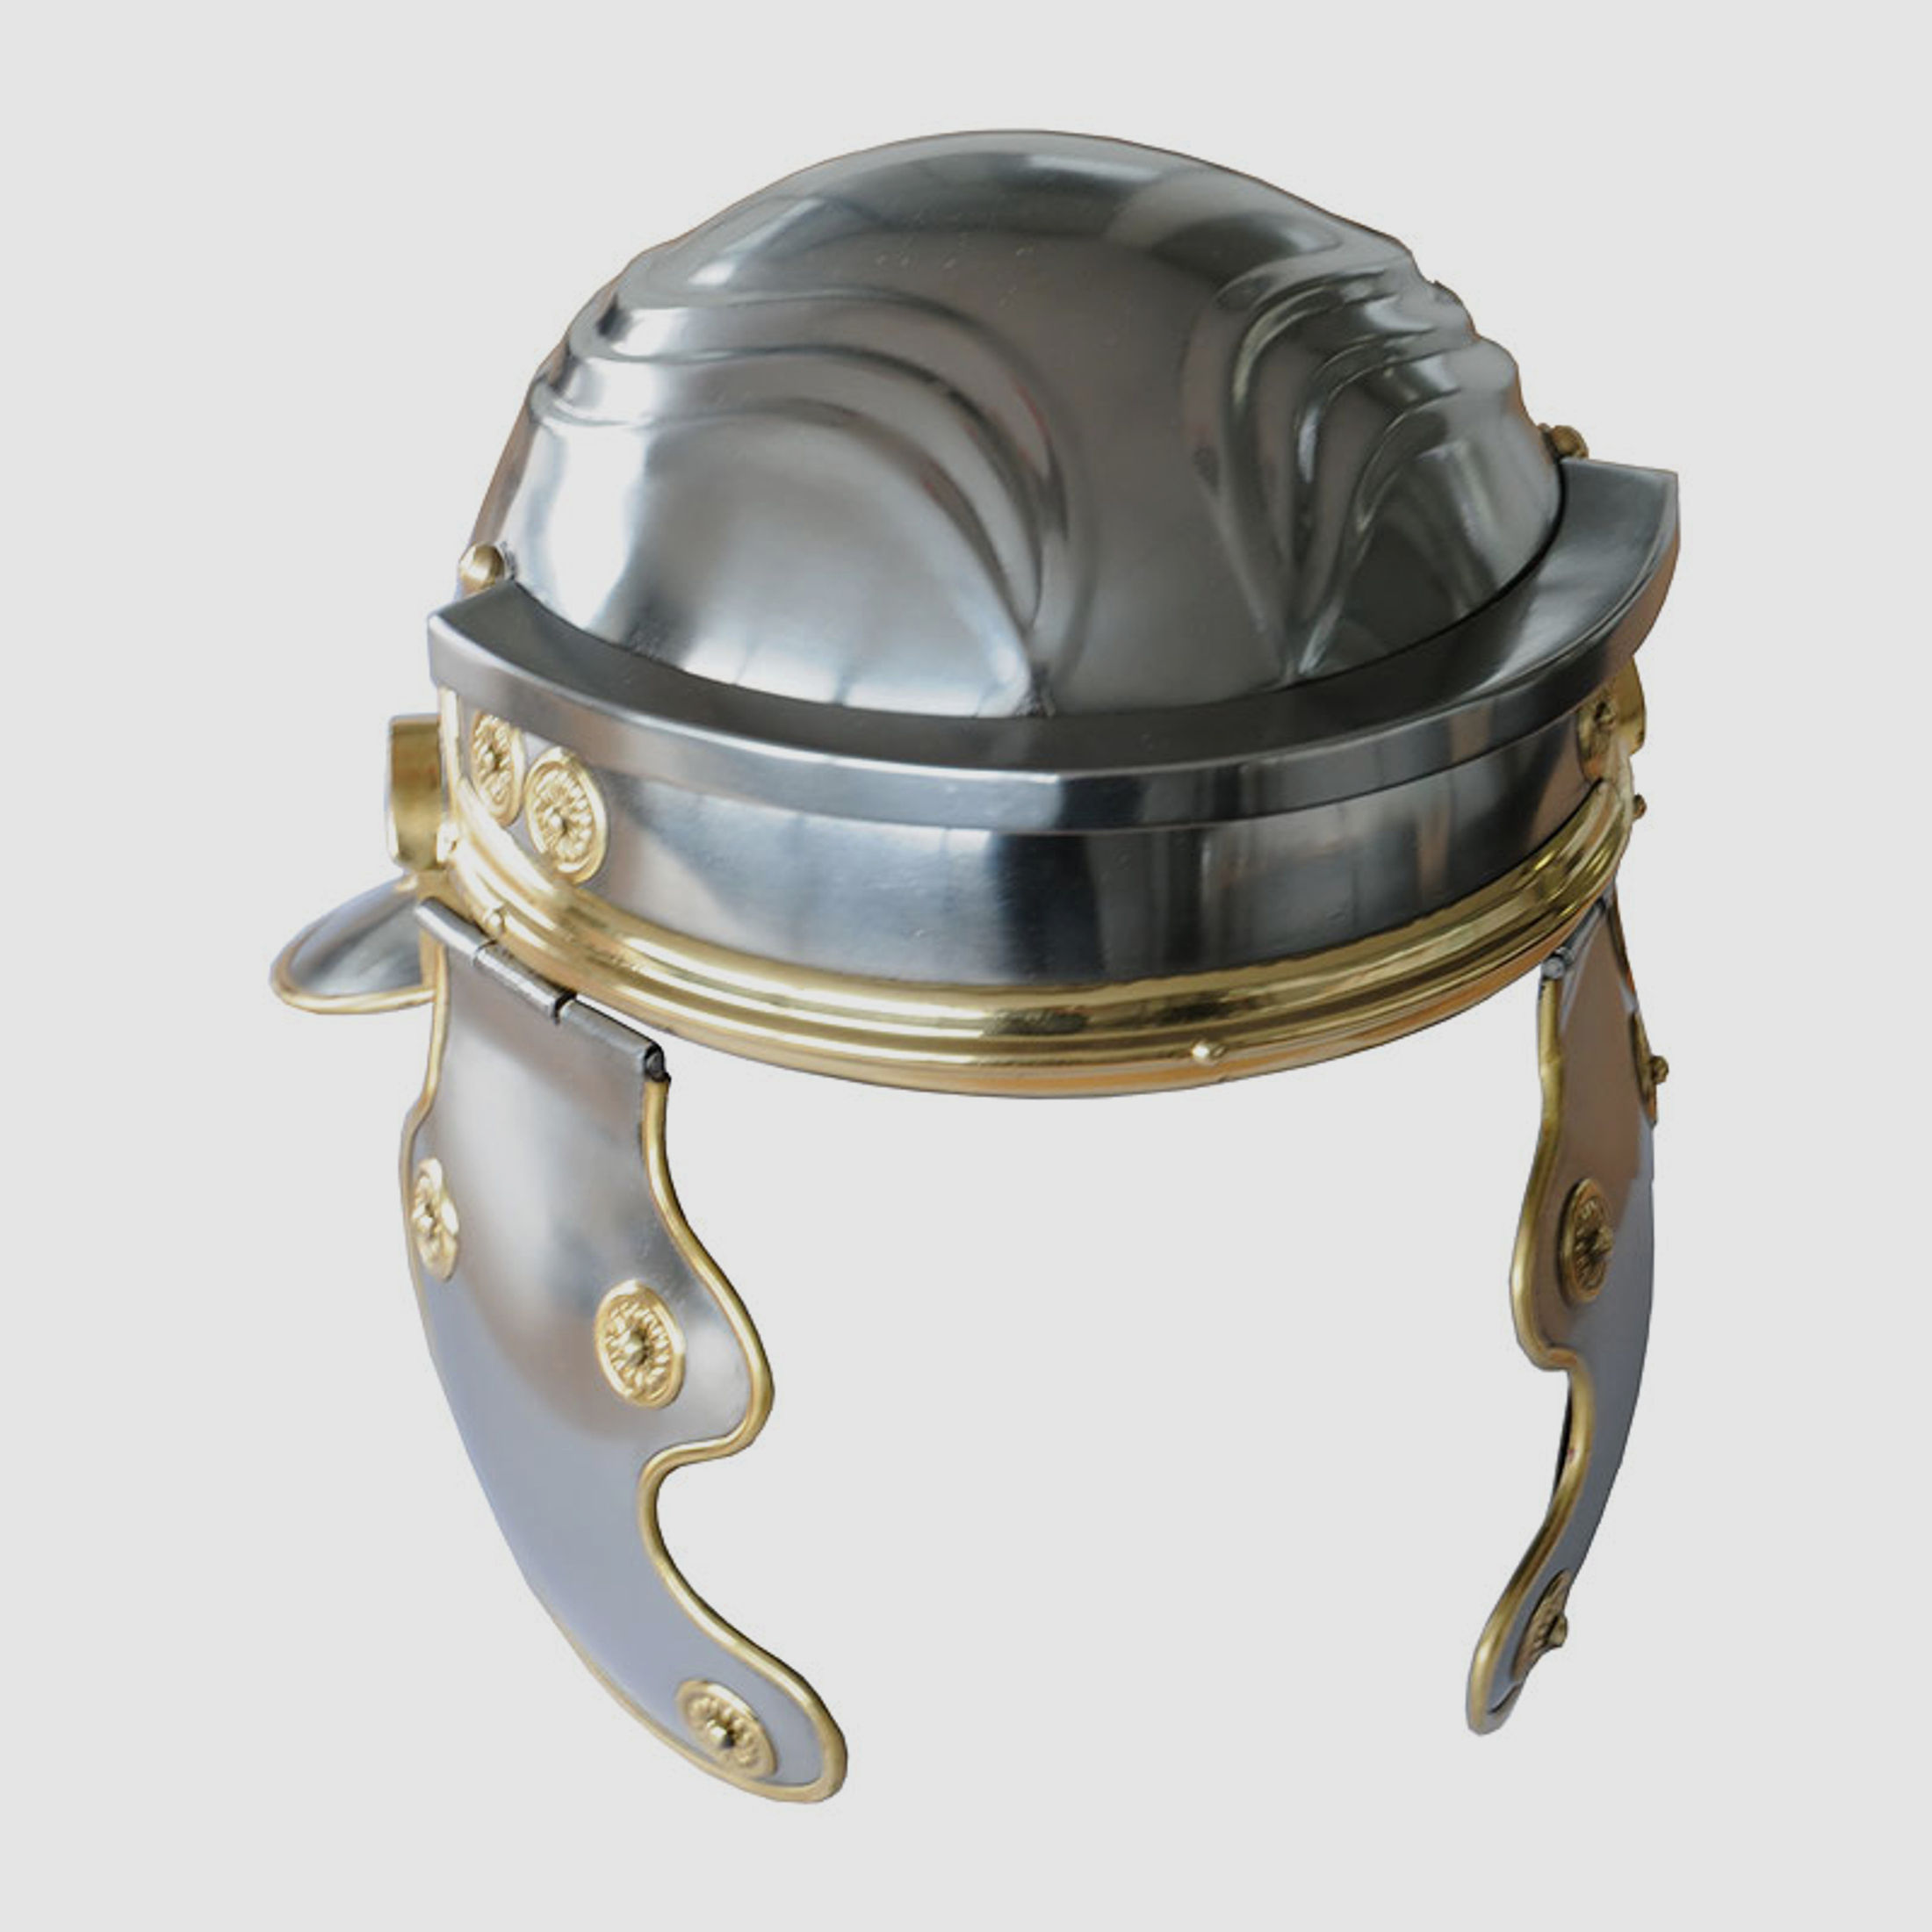 Kaiserlicher römischer Helm | 41496